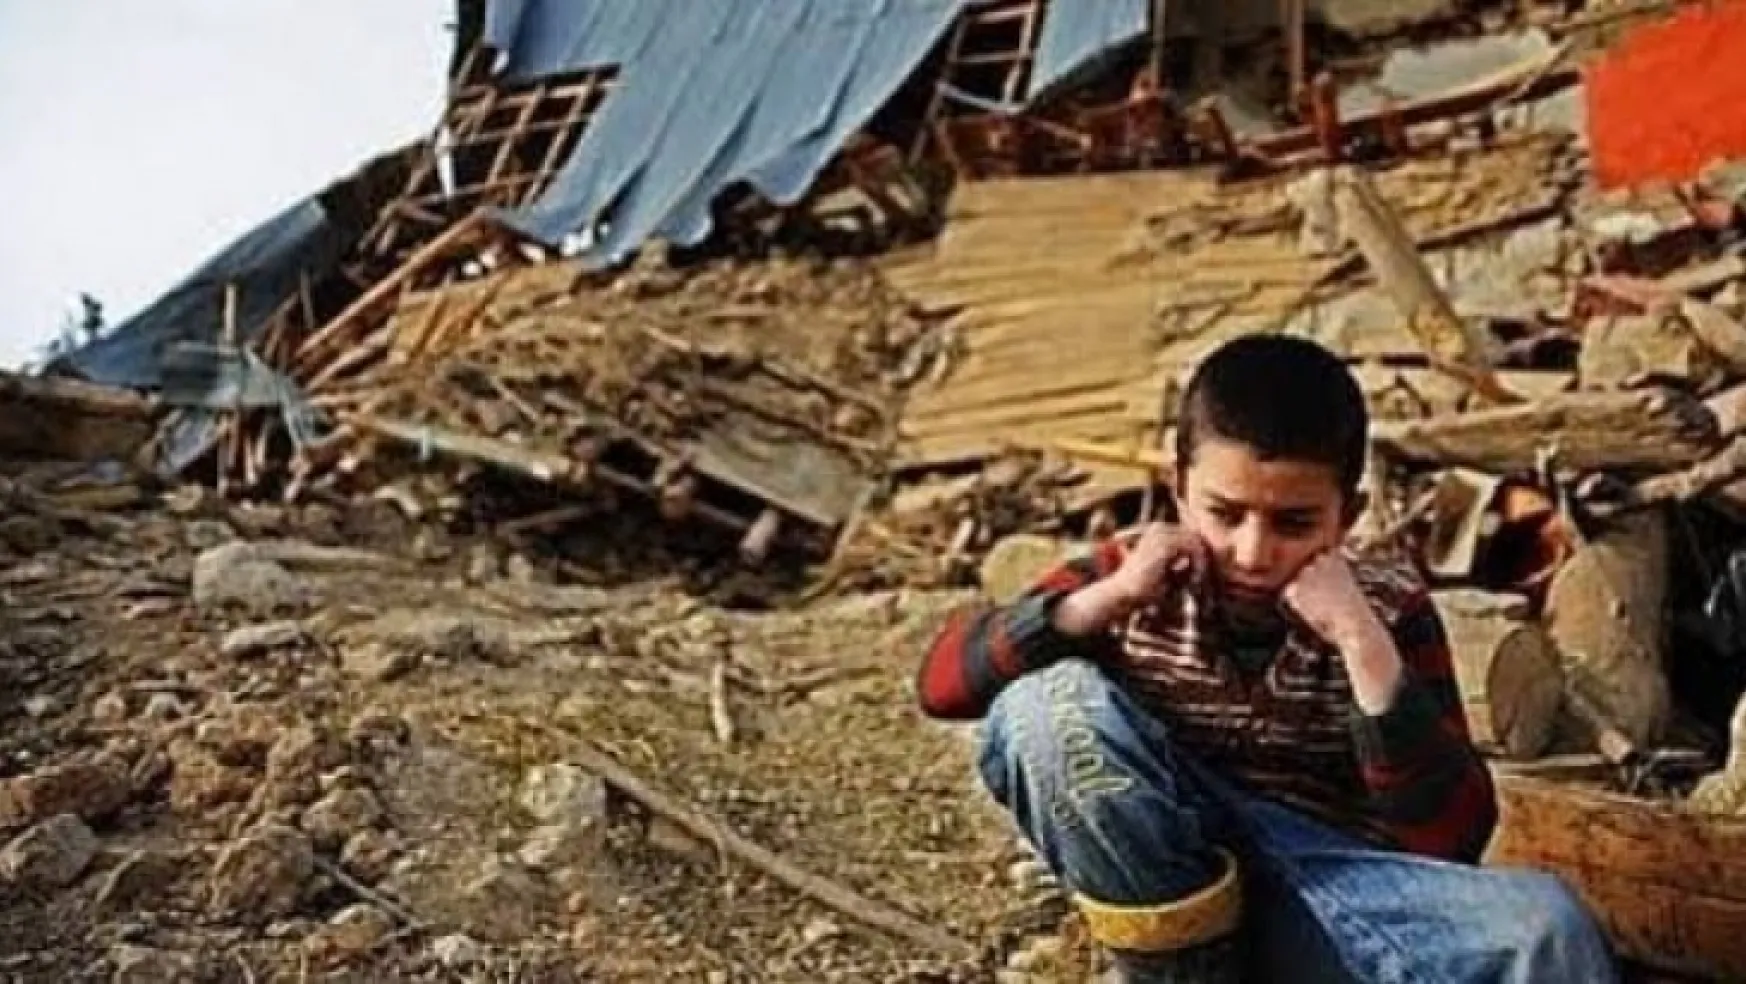 Çocuklar depremin yaratacağı travmayla nasıl başa çıkar